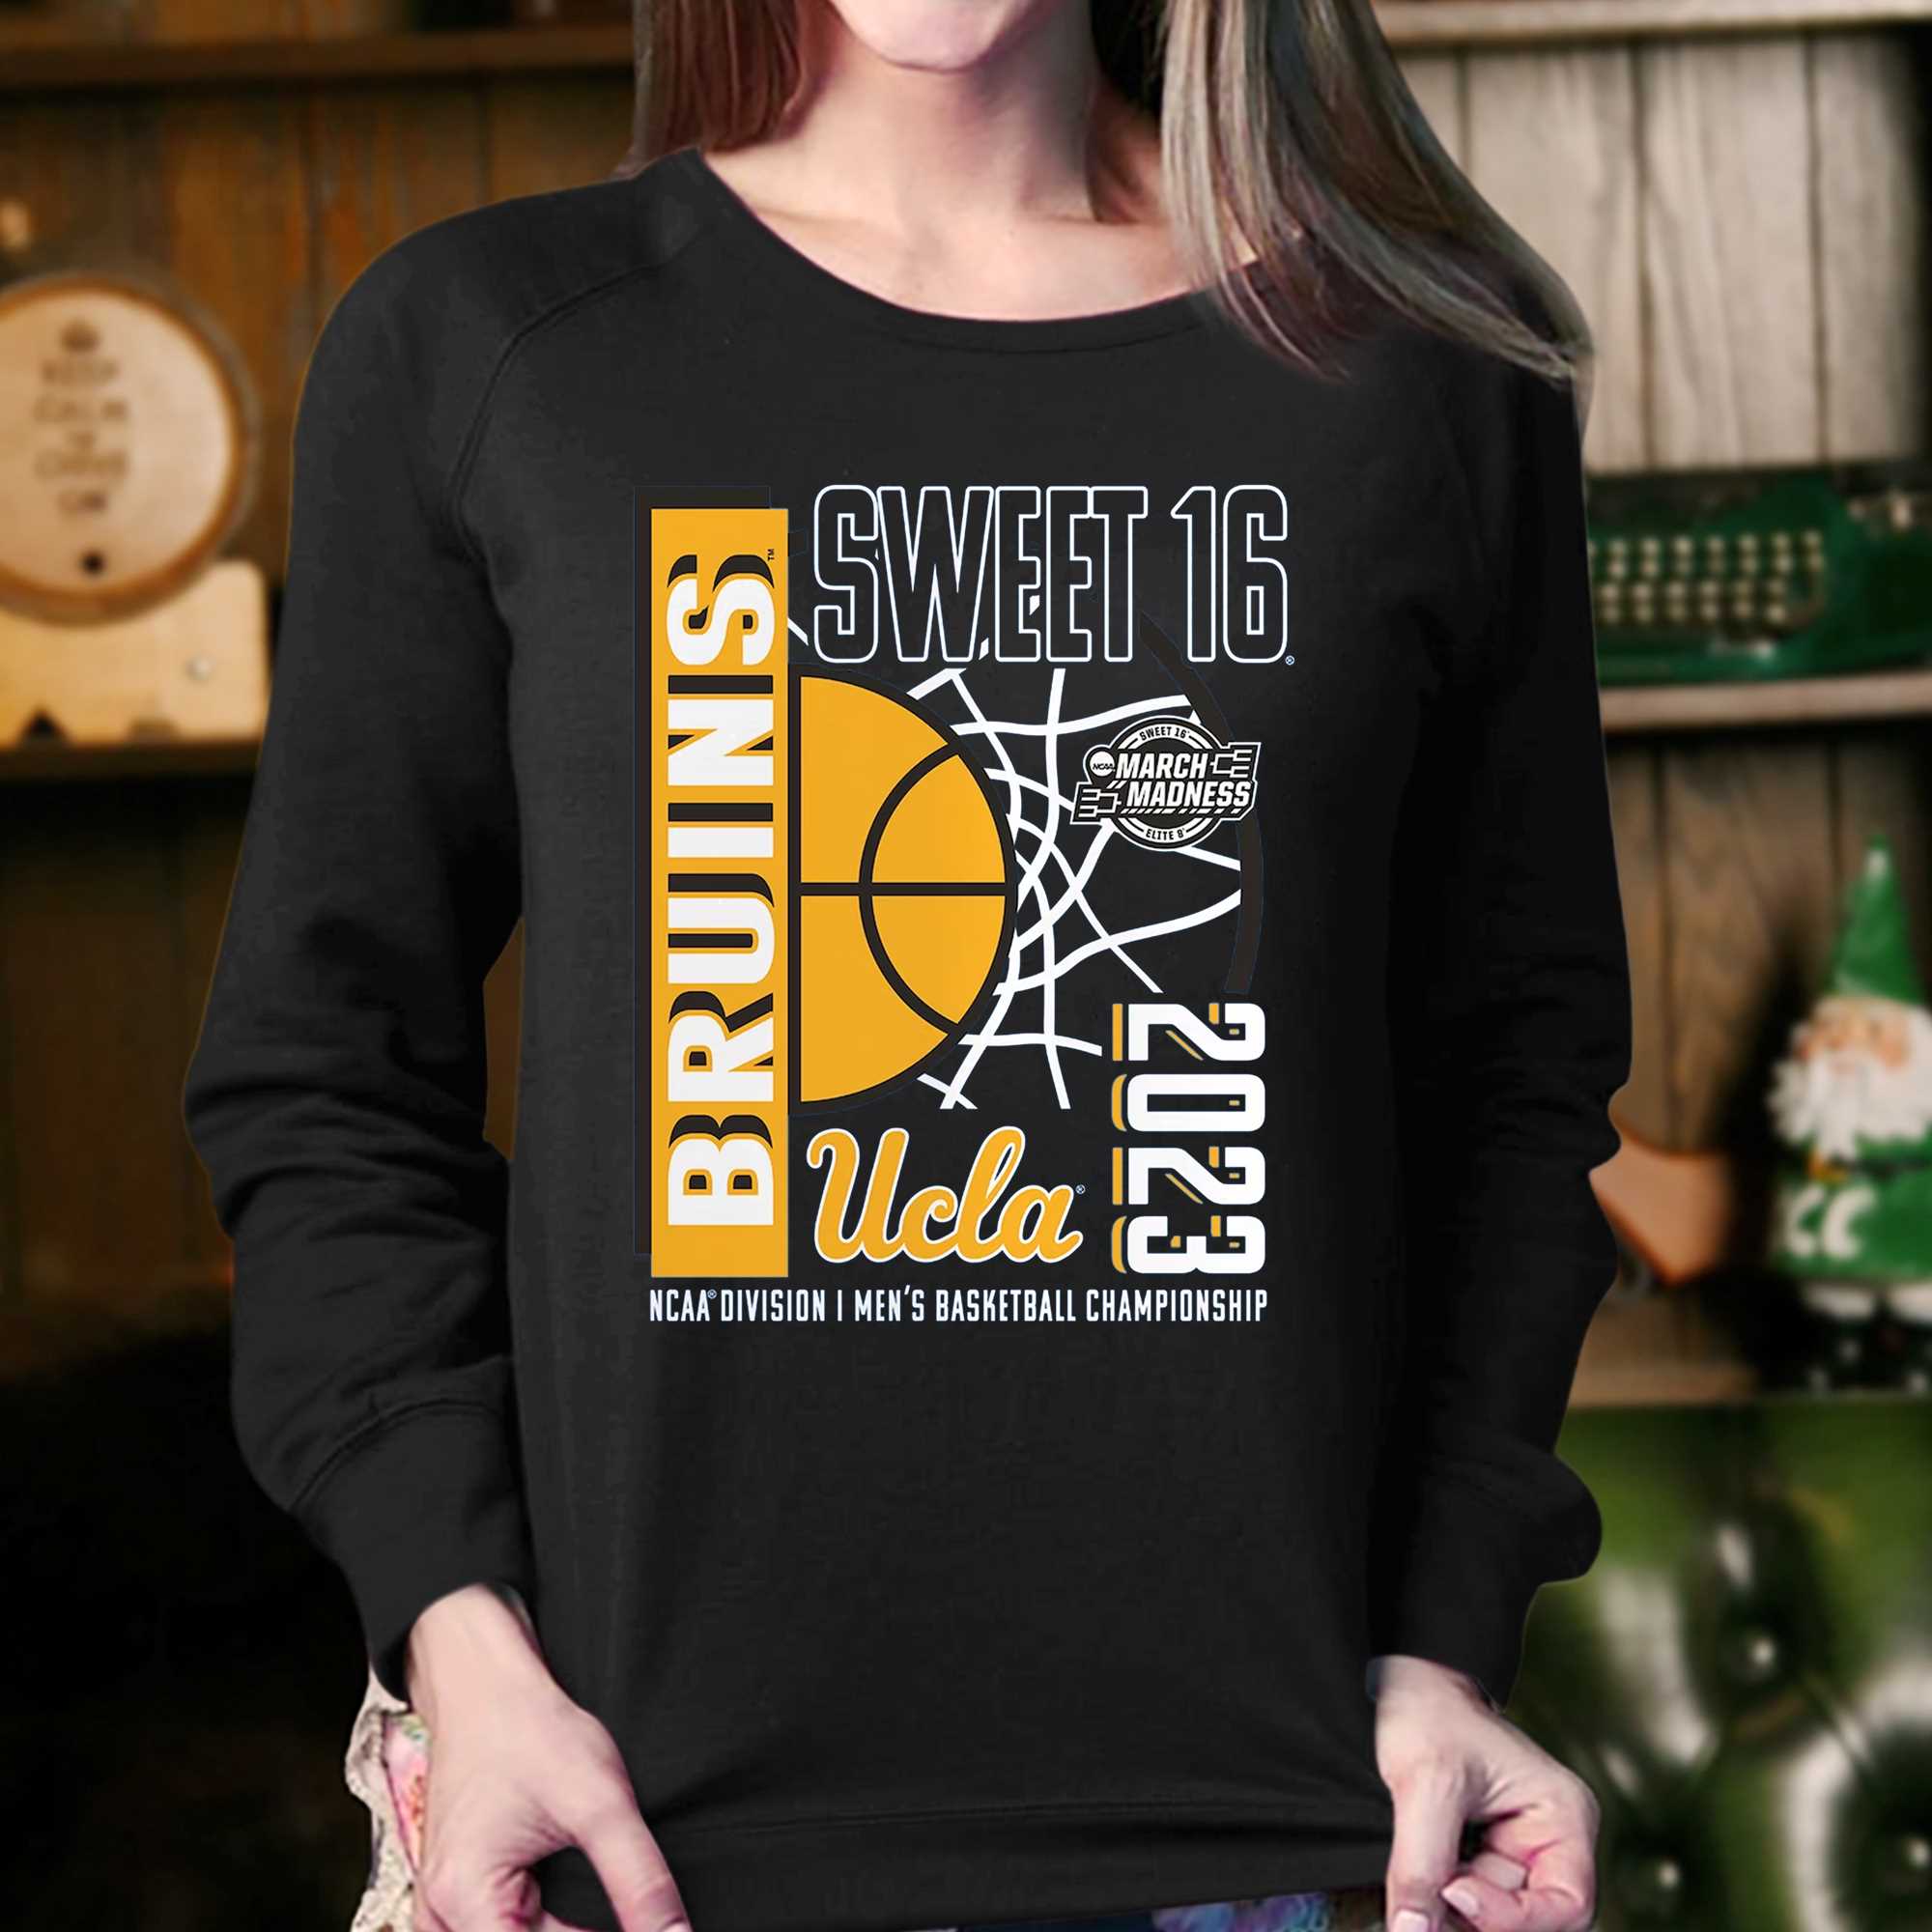 Bruins NCAA tournament basketball jersey